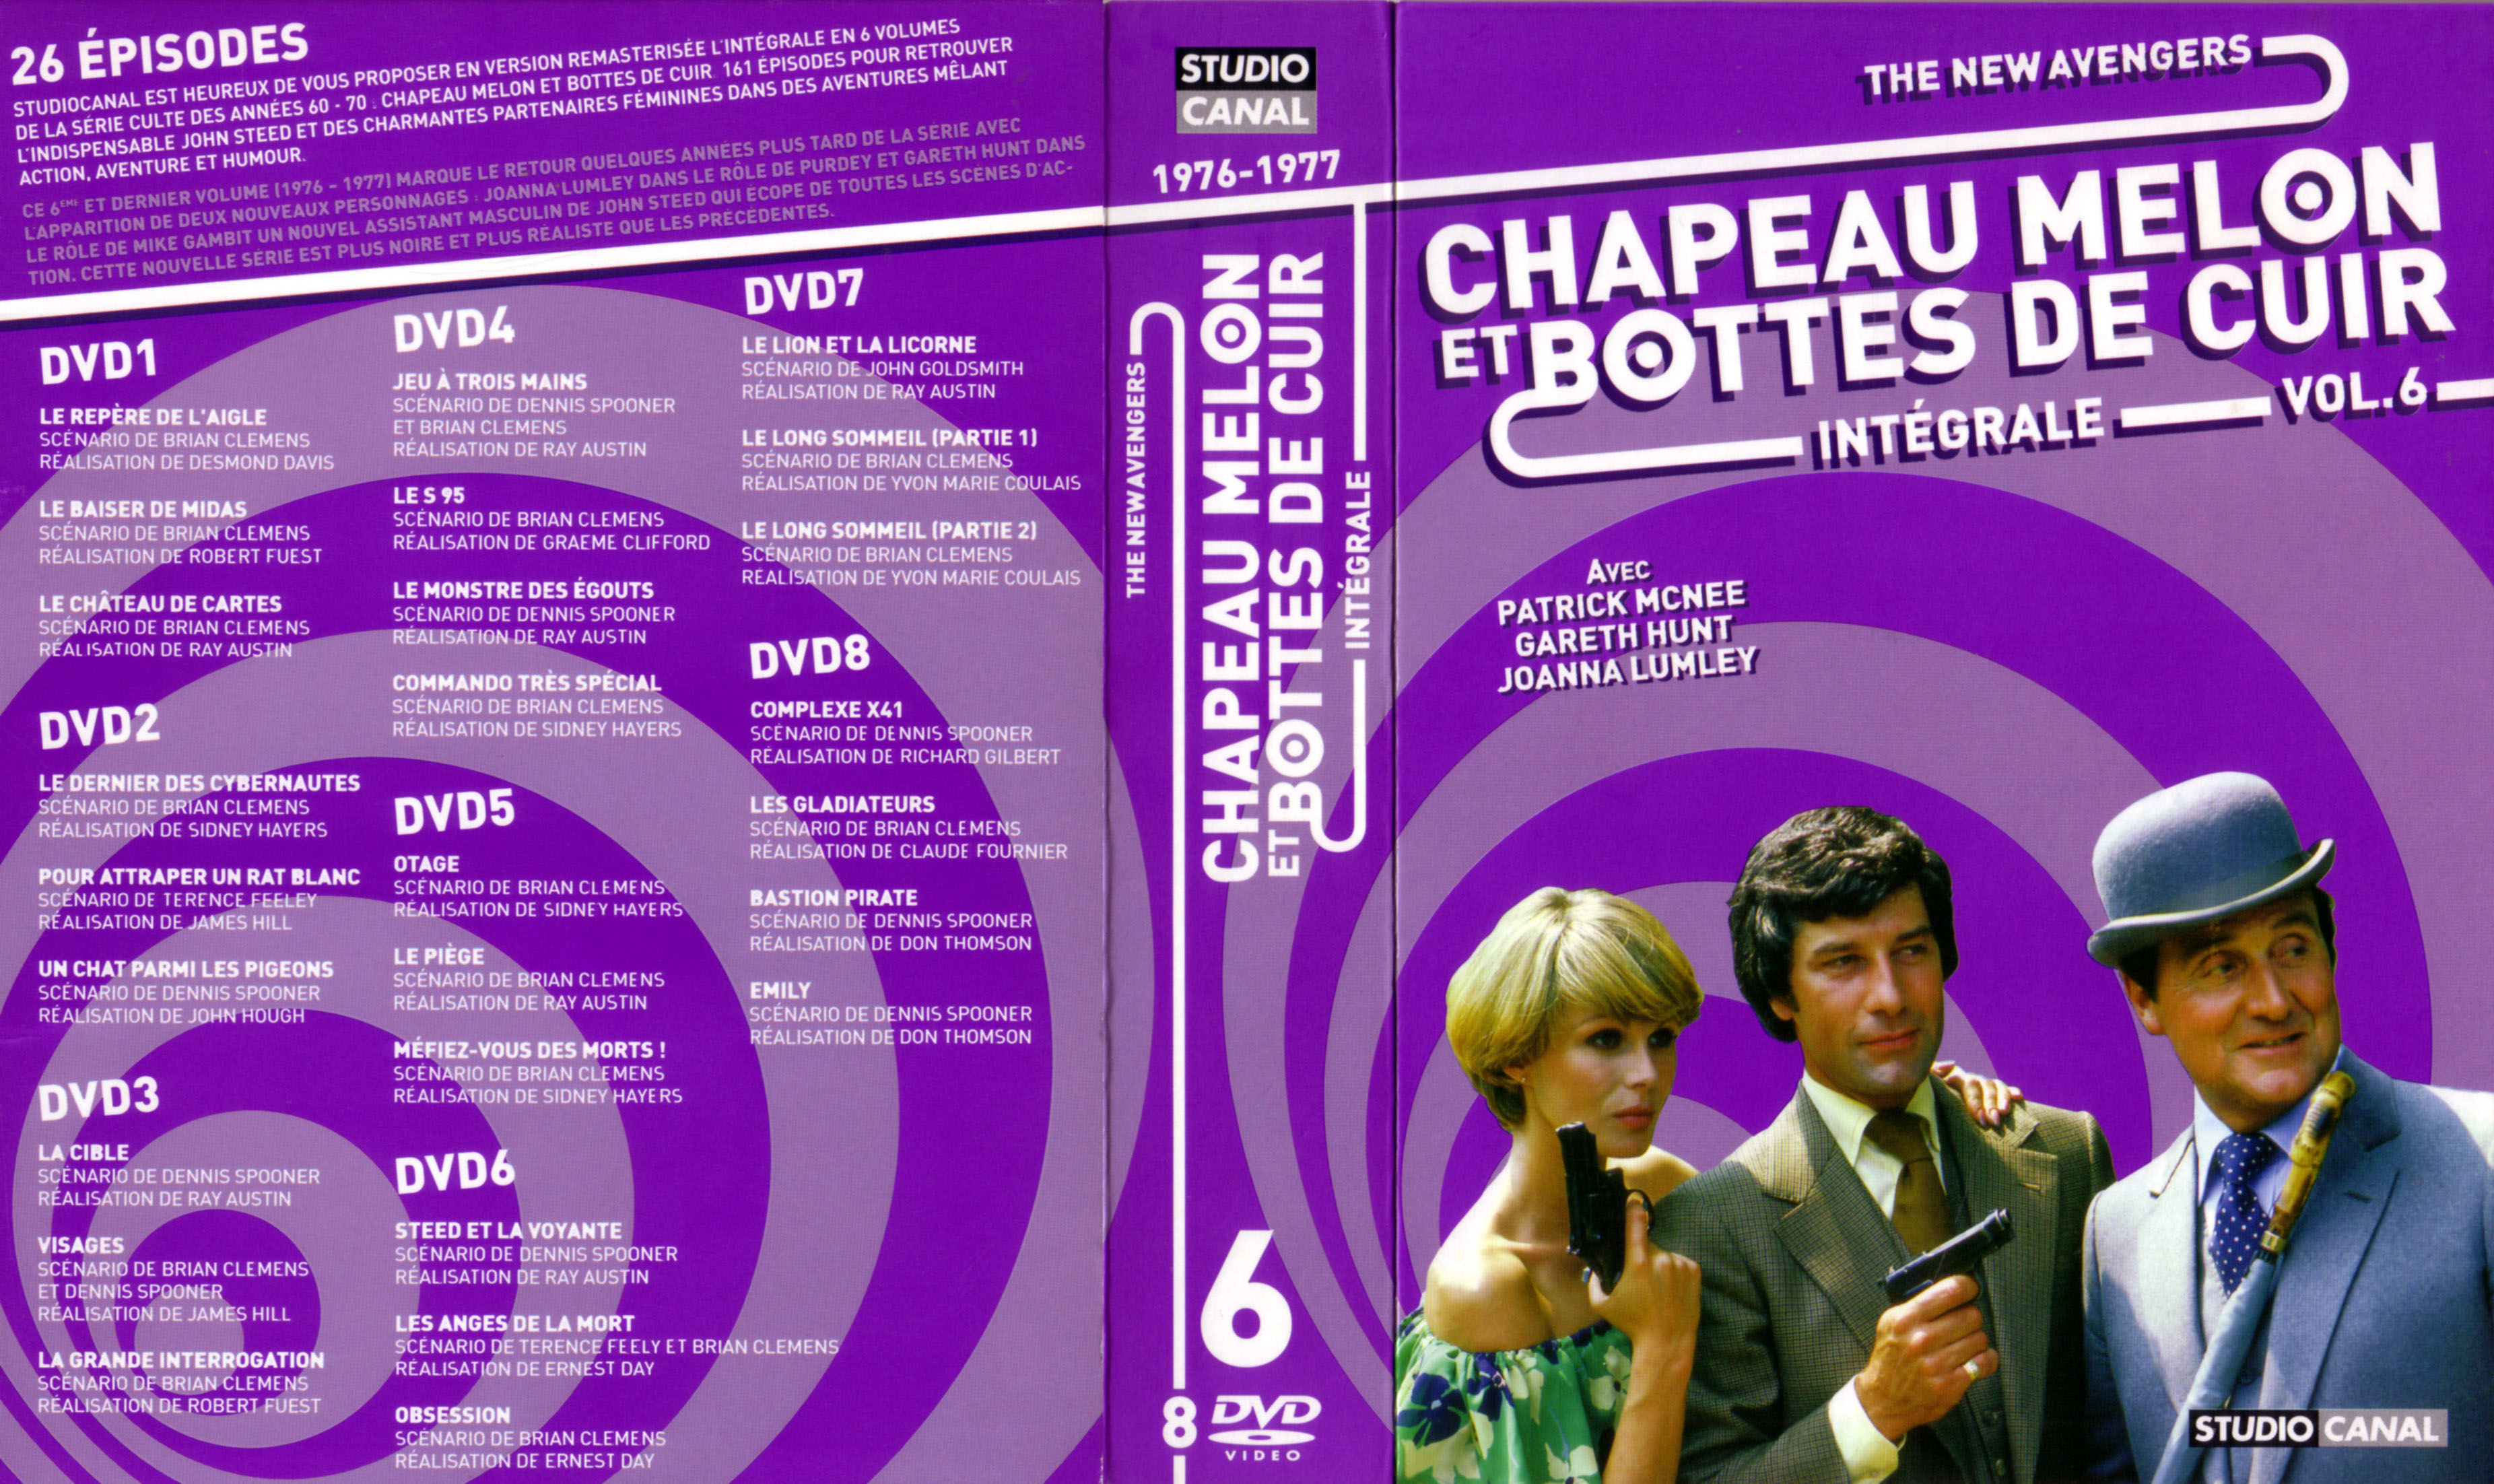 Jaquette DVD Chapeau melon et bottes de cuir Integrale vol 06